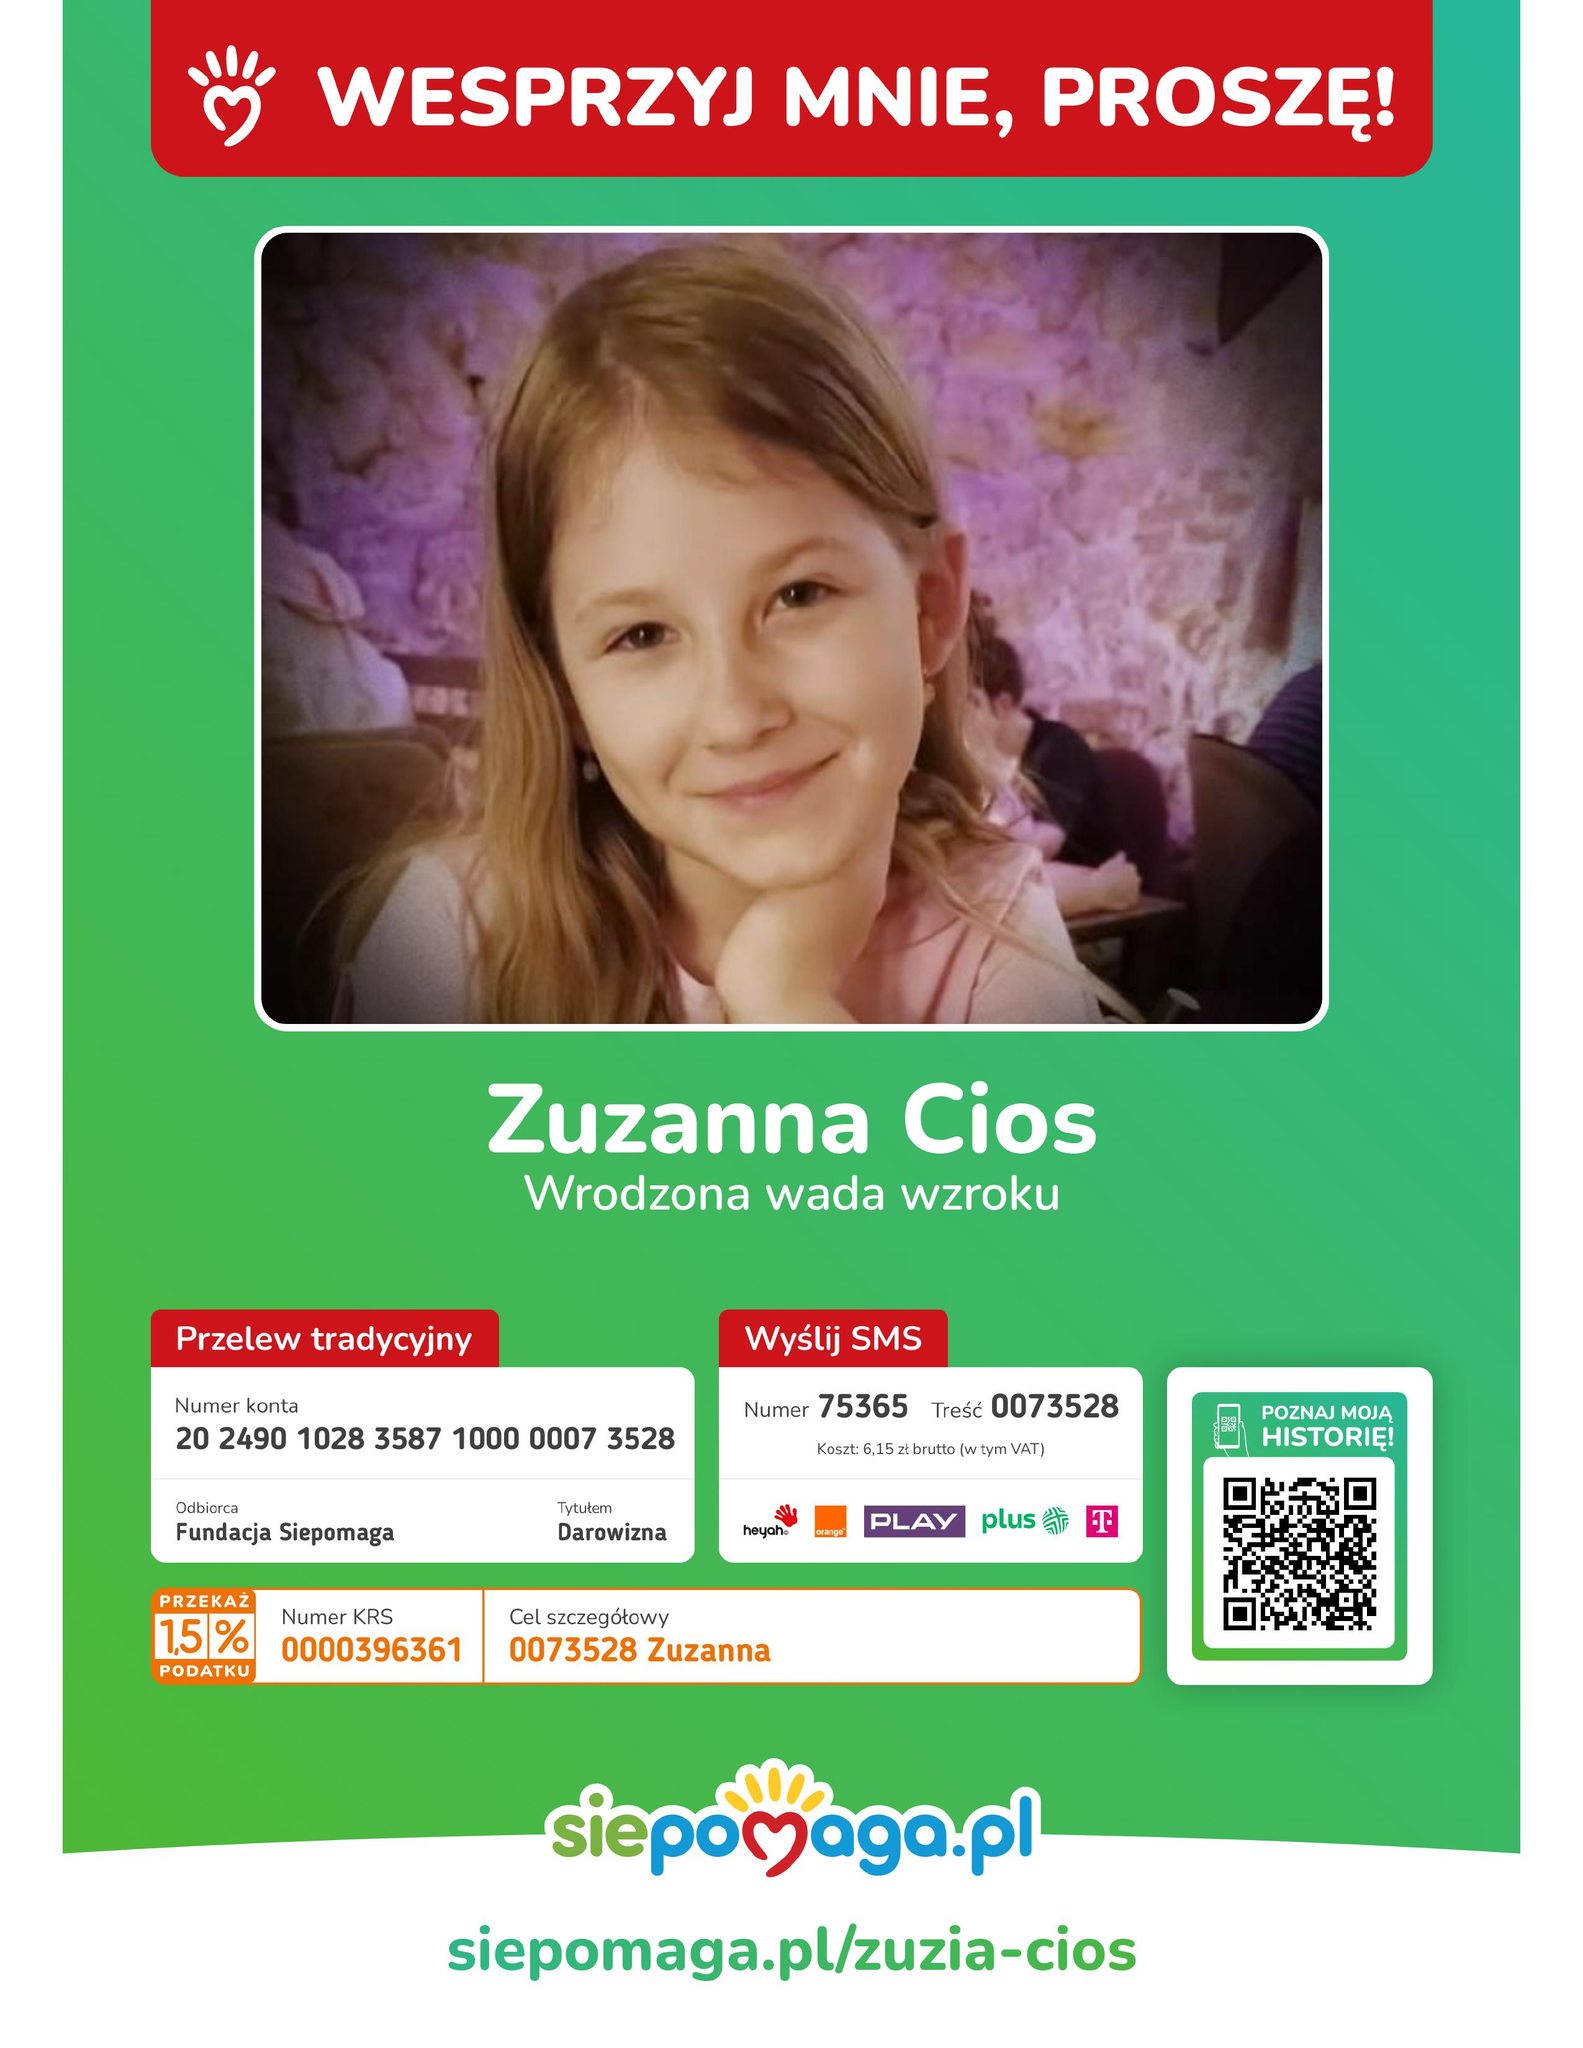 plakat na zielonym tle, na środku zdjęcie dziewczynki, na dole informacje o dokonaniu wsparcia